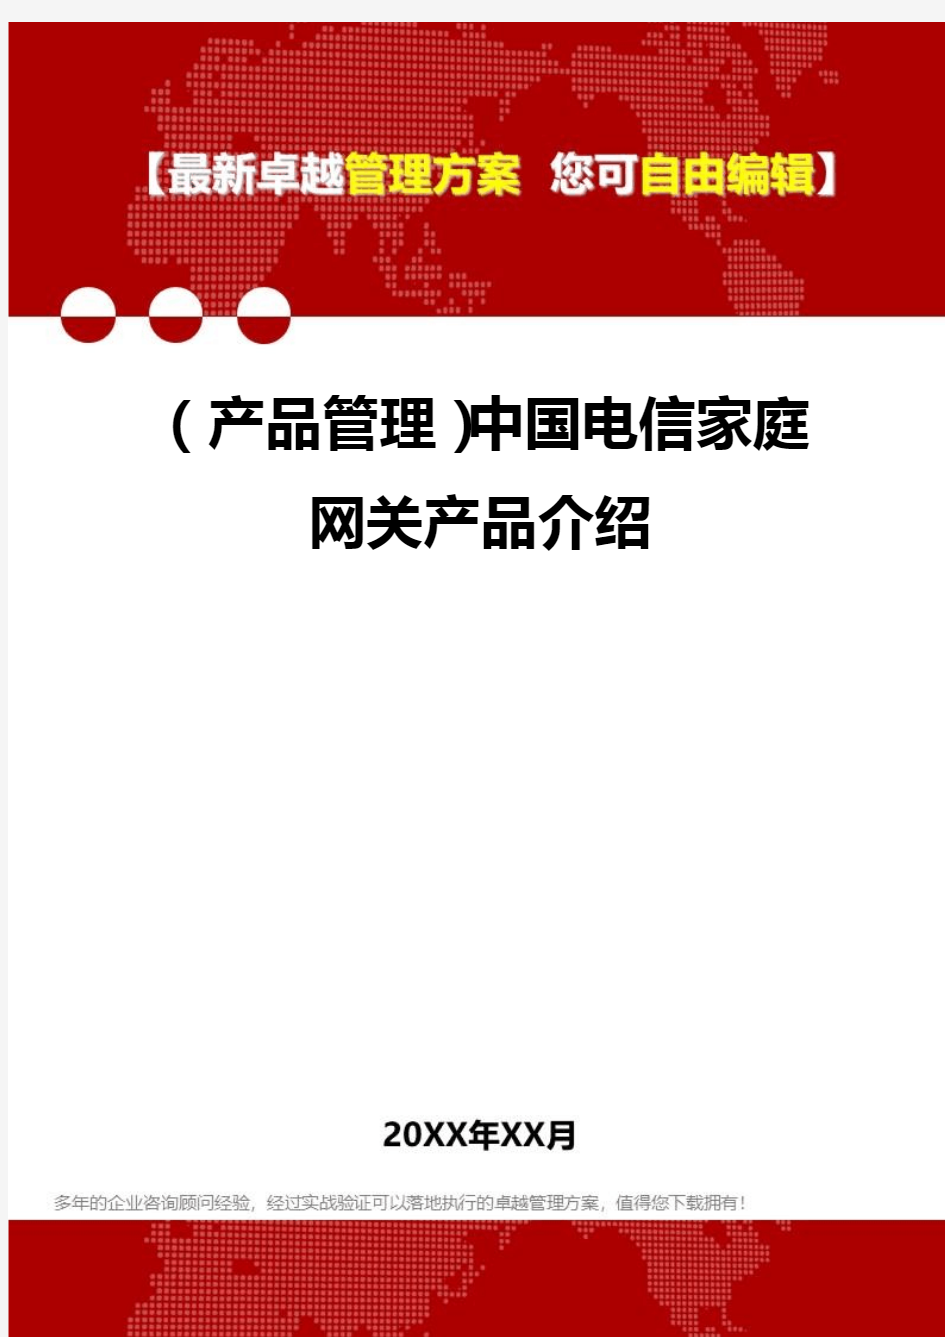 2020年(产品管理)中国电信家庭网关产品介绍